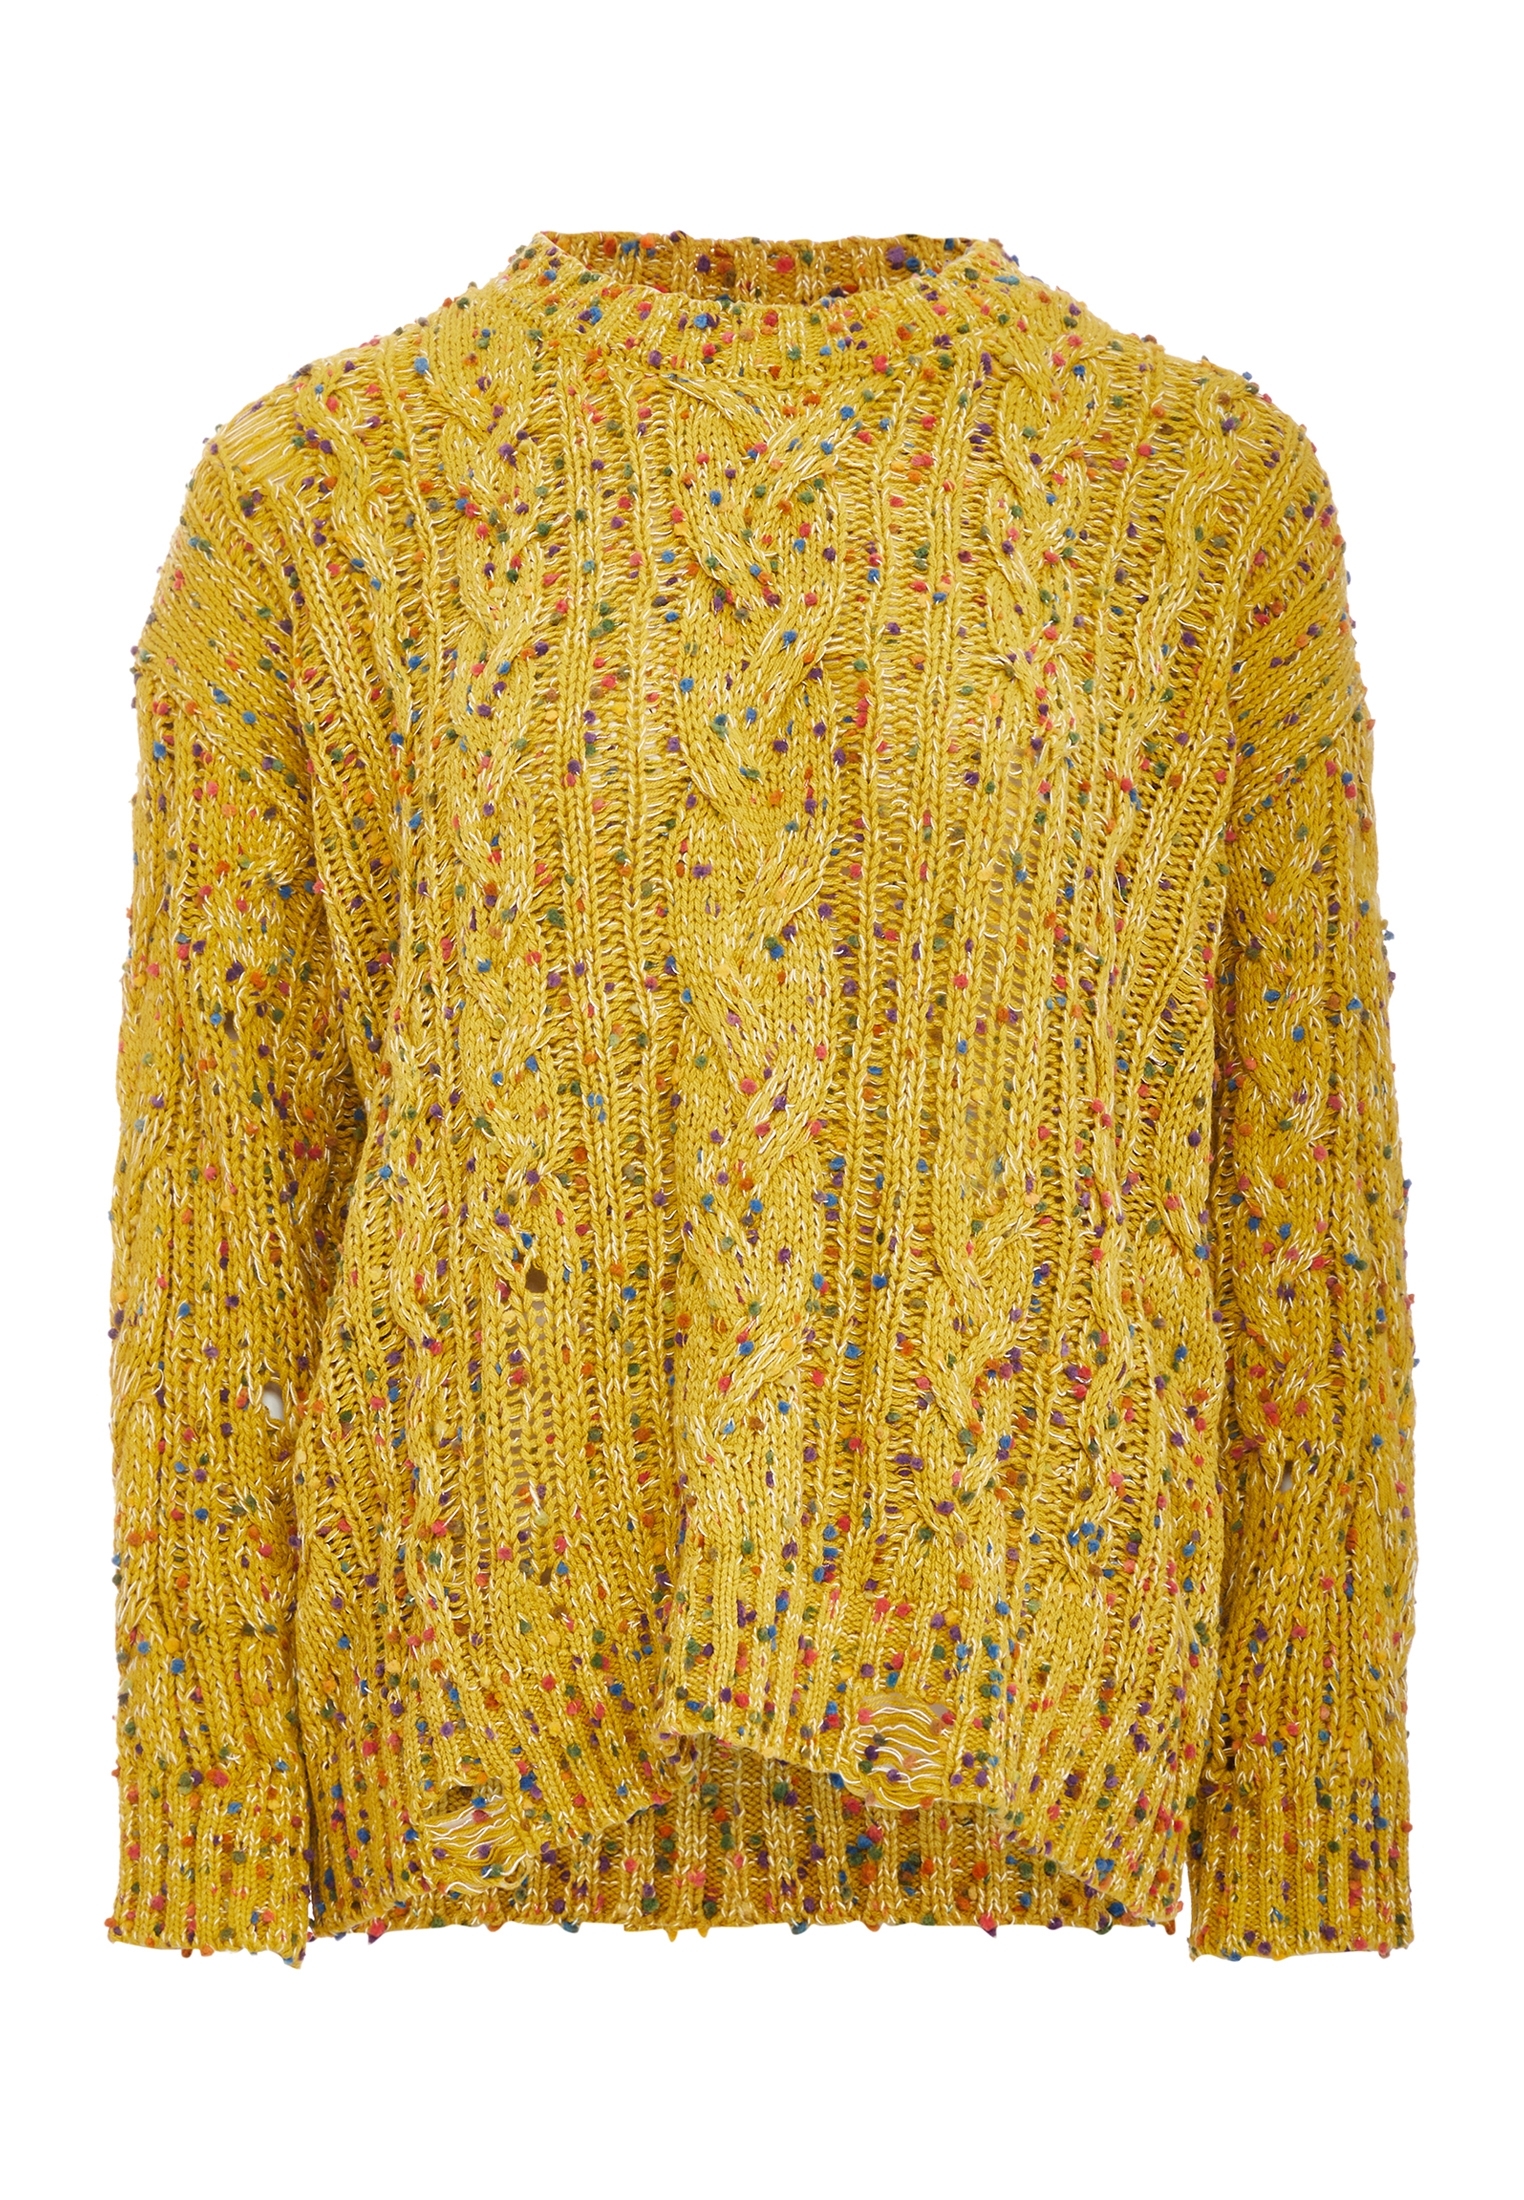 Свитер Tanuna Strick, желтый свитер tanuna strick цвет senf